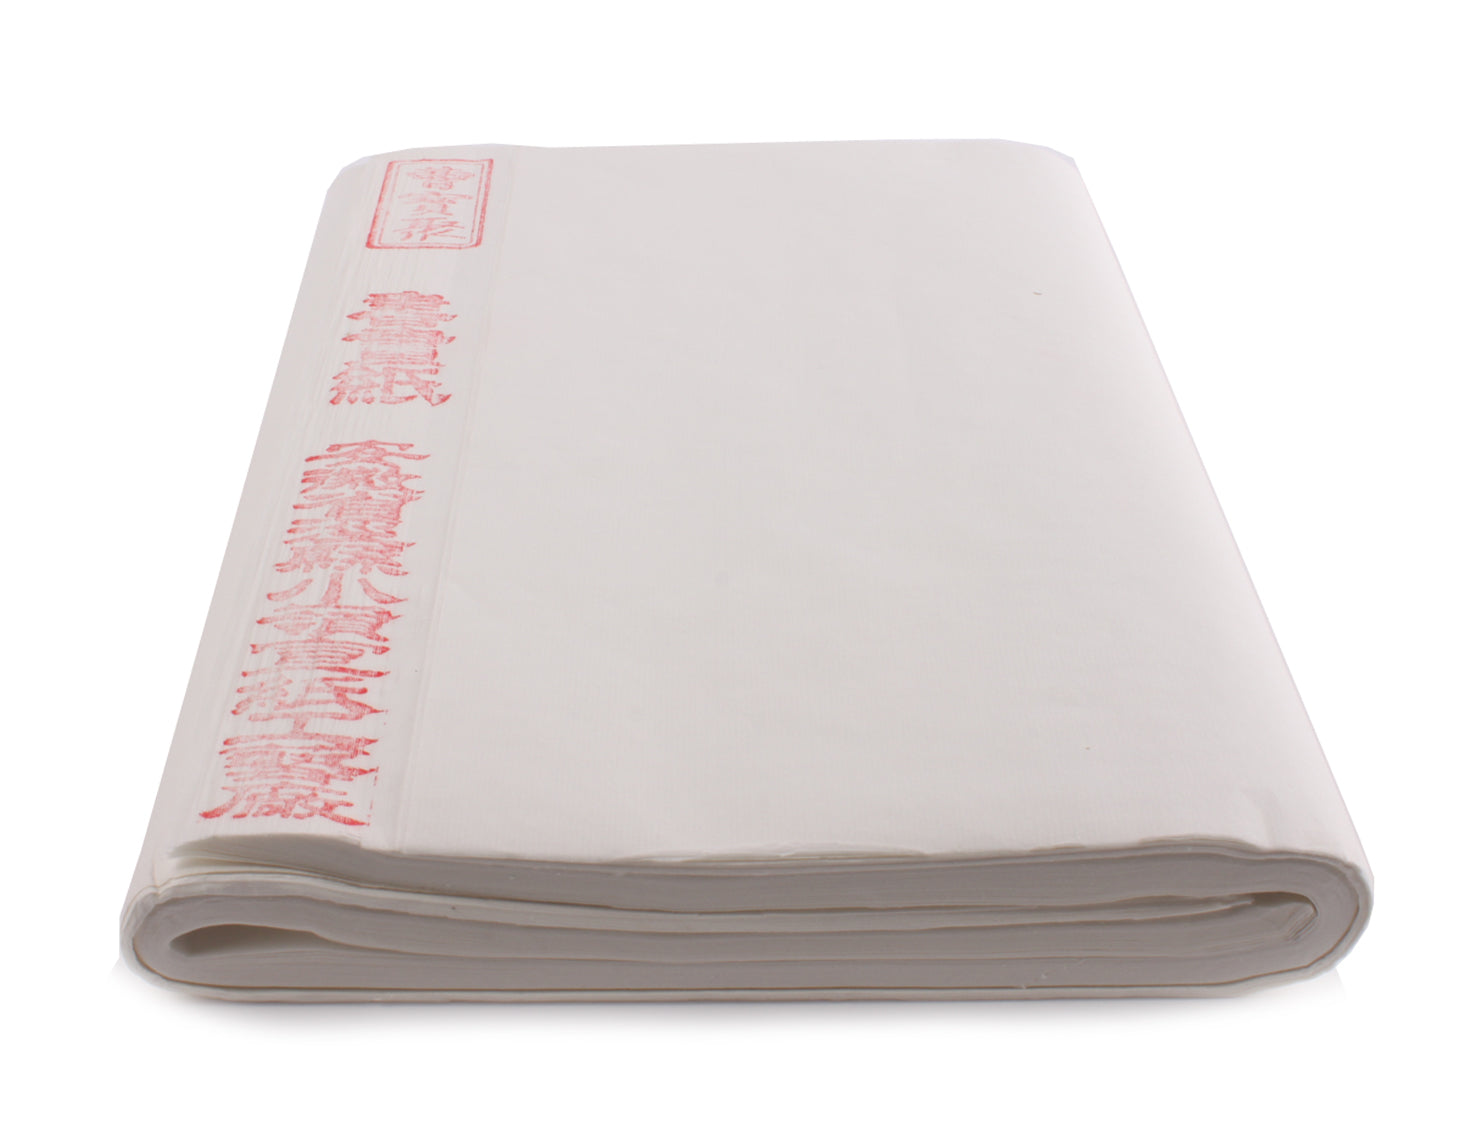  Premium Handmade White Rice Paper for Chinese and